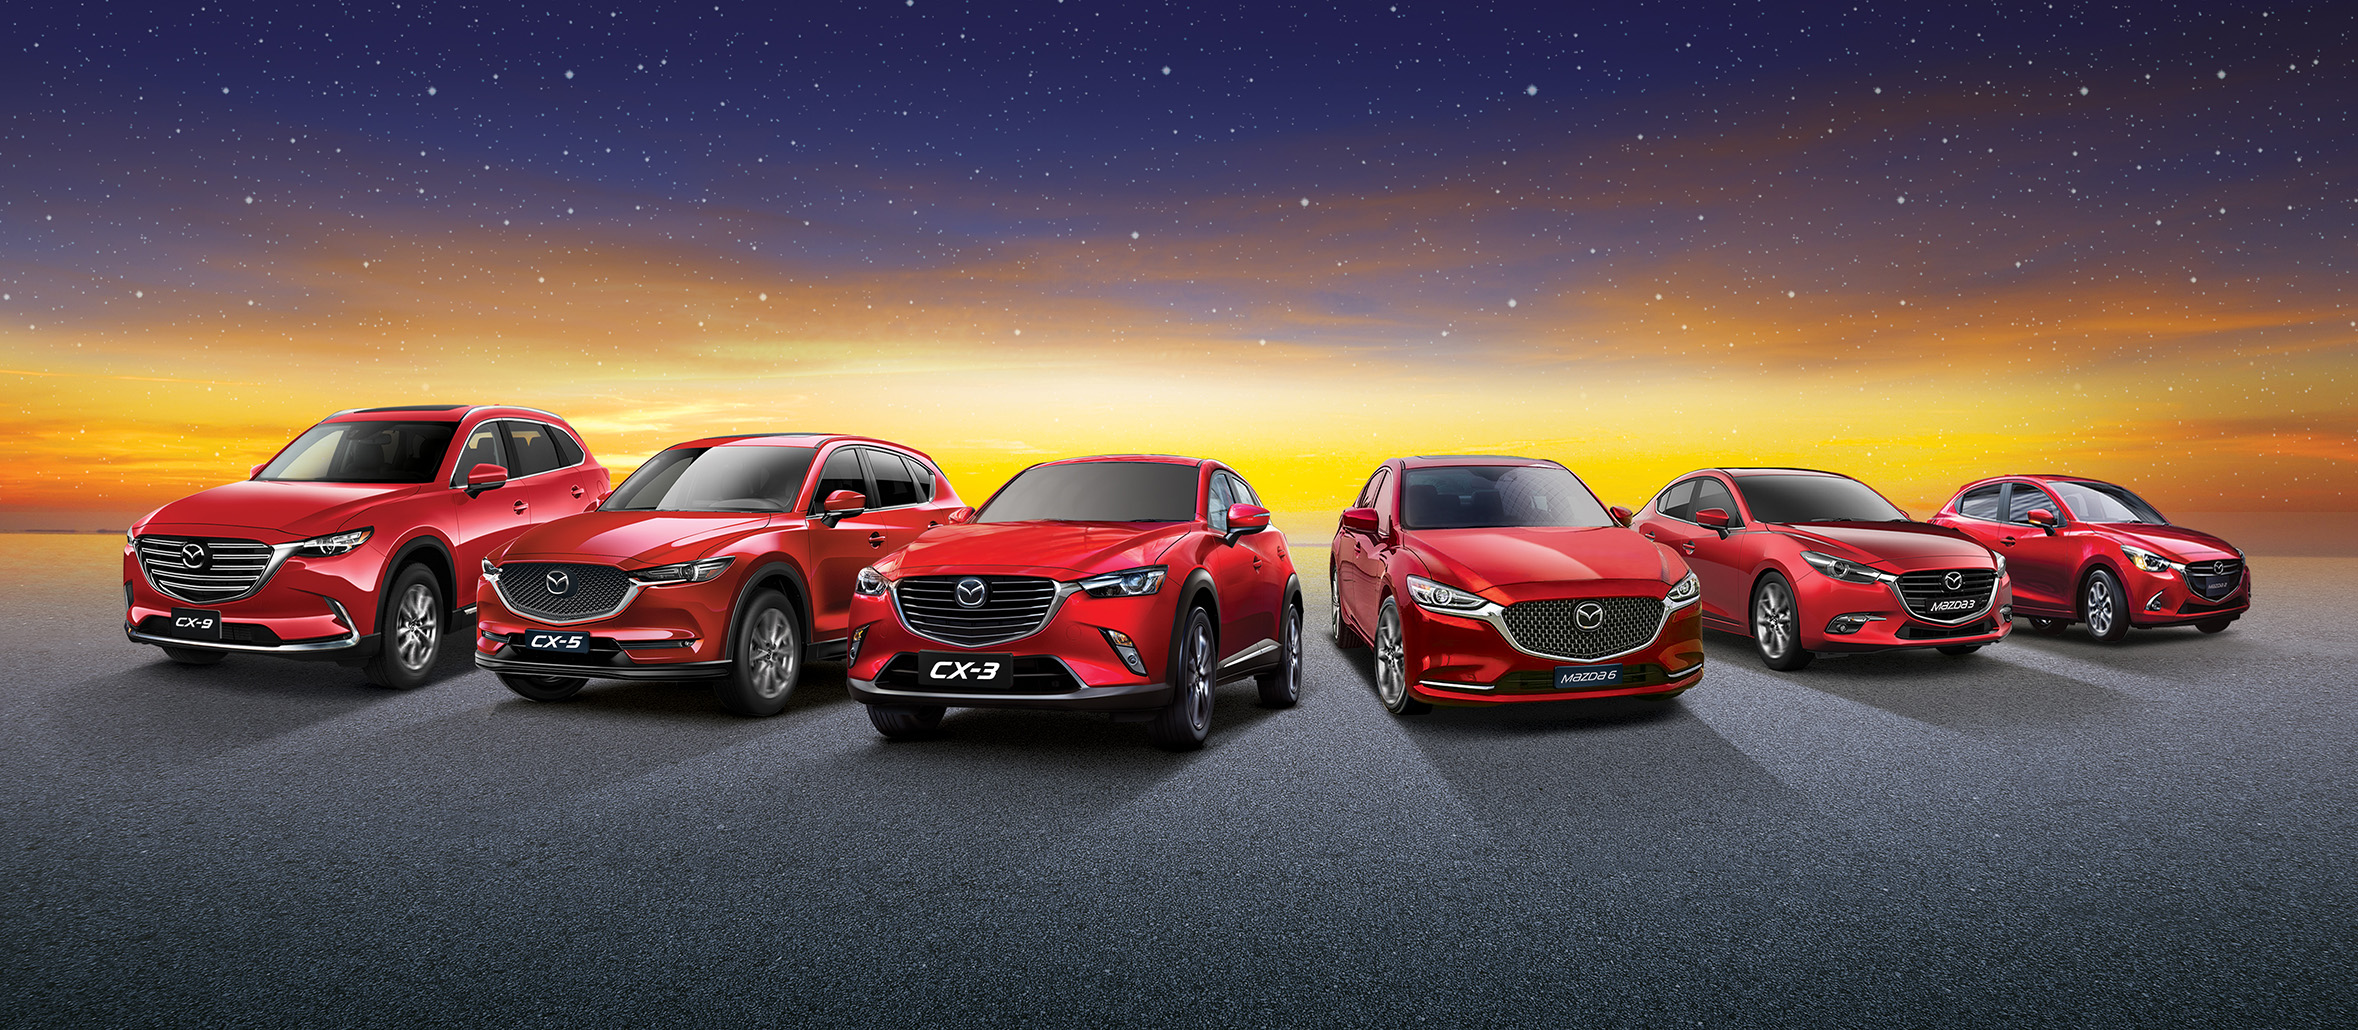 Mazda repair centre, mazda range 2021, mazda approved